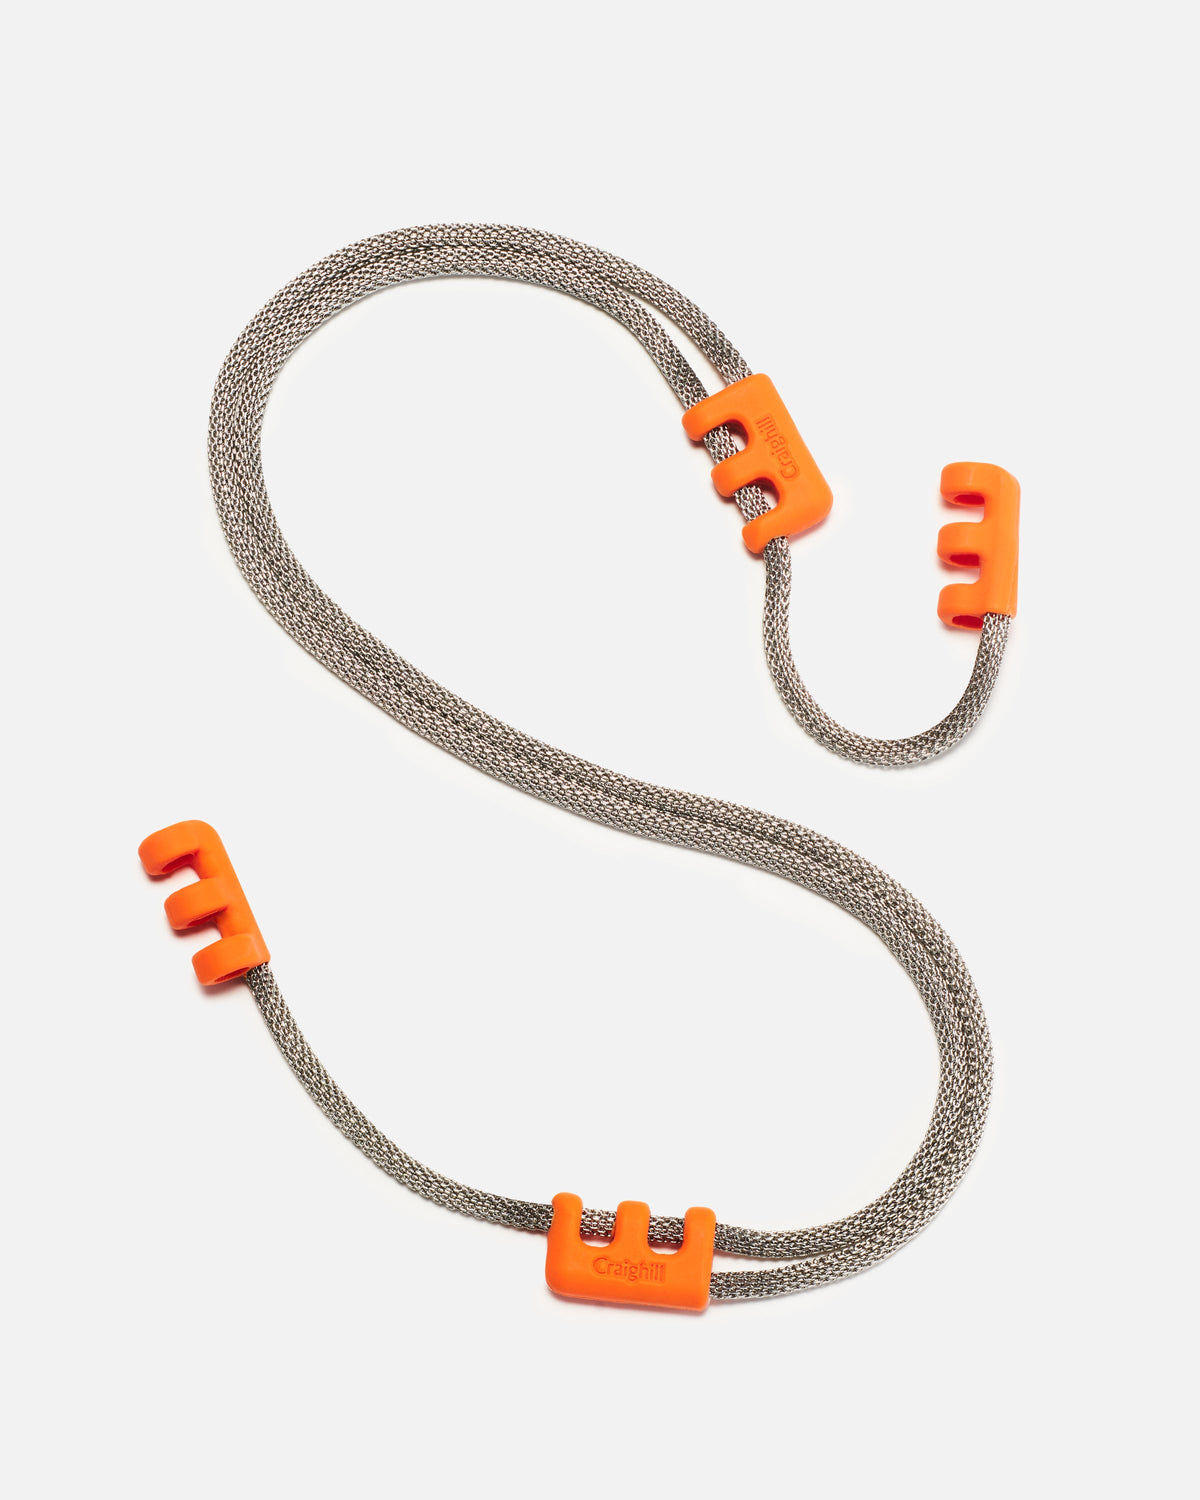 Eyewear Chain in Orange